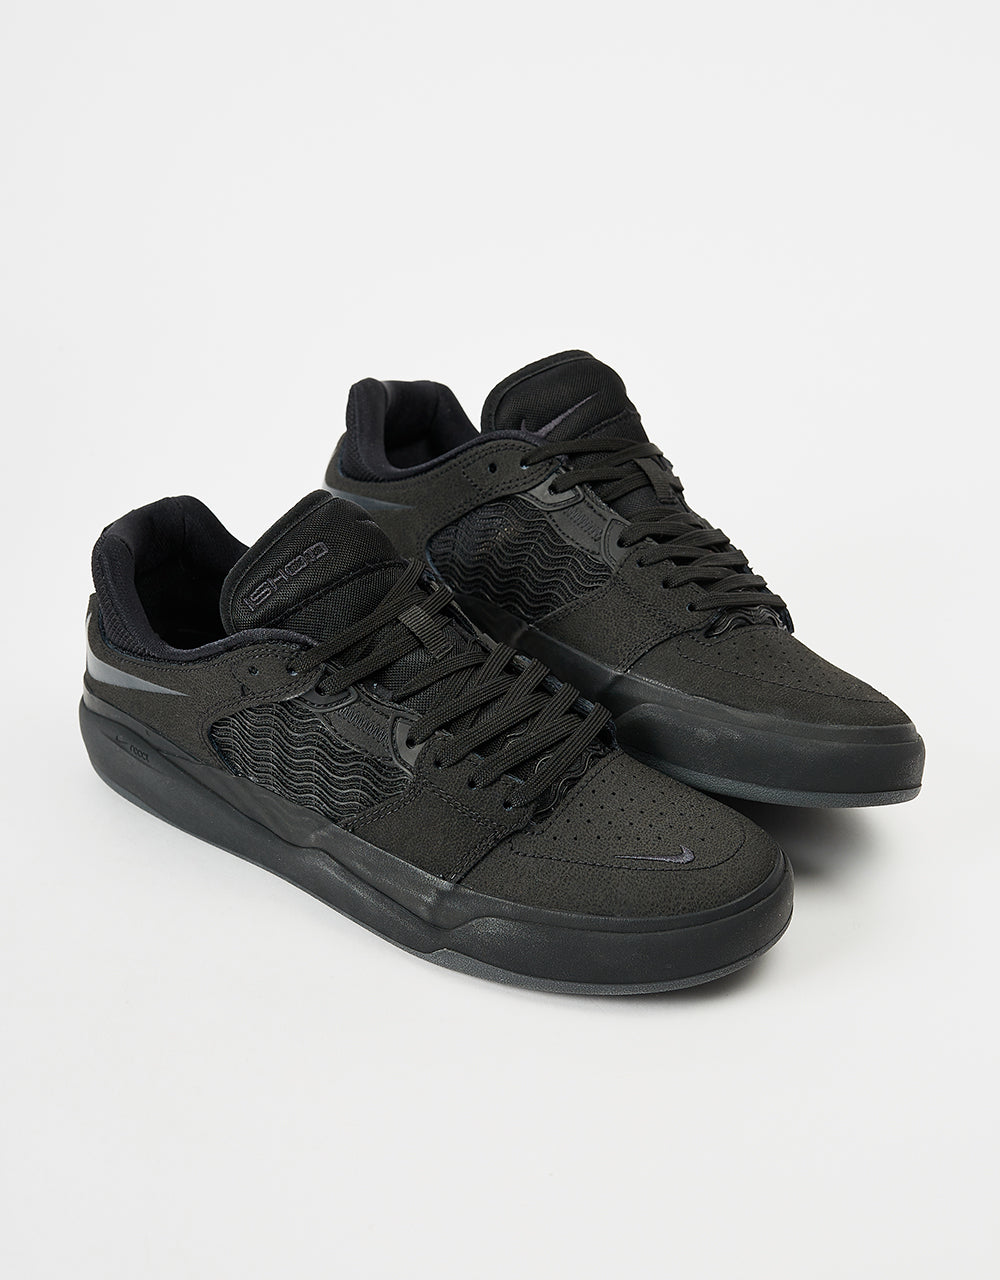 Nike SB Ishod Premium Skate Shoes - Black/Black-Black-Black